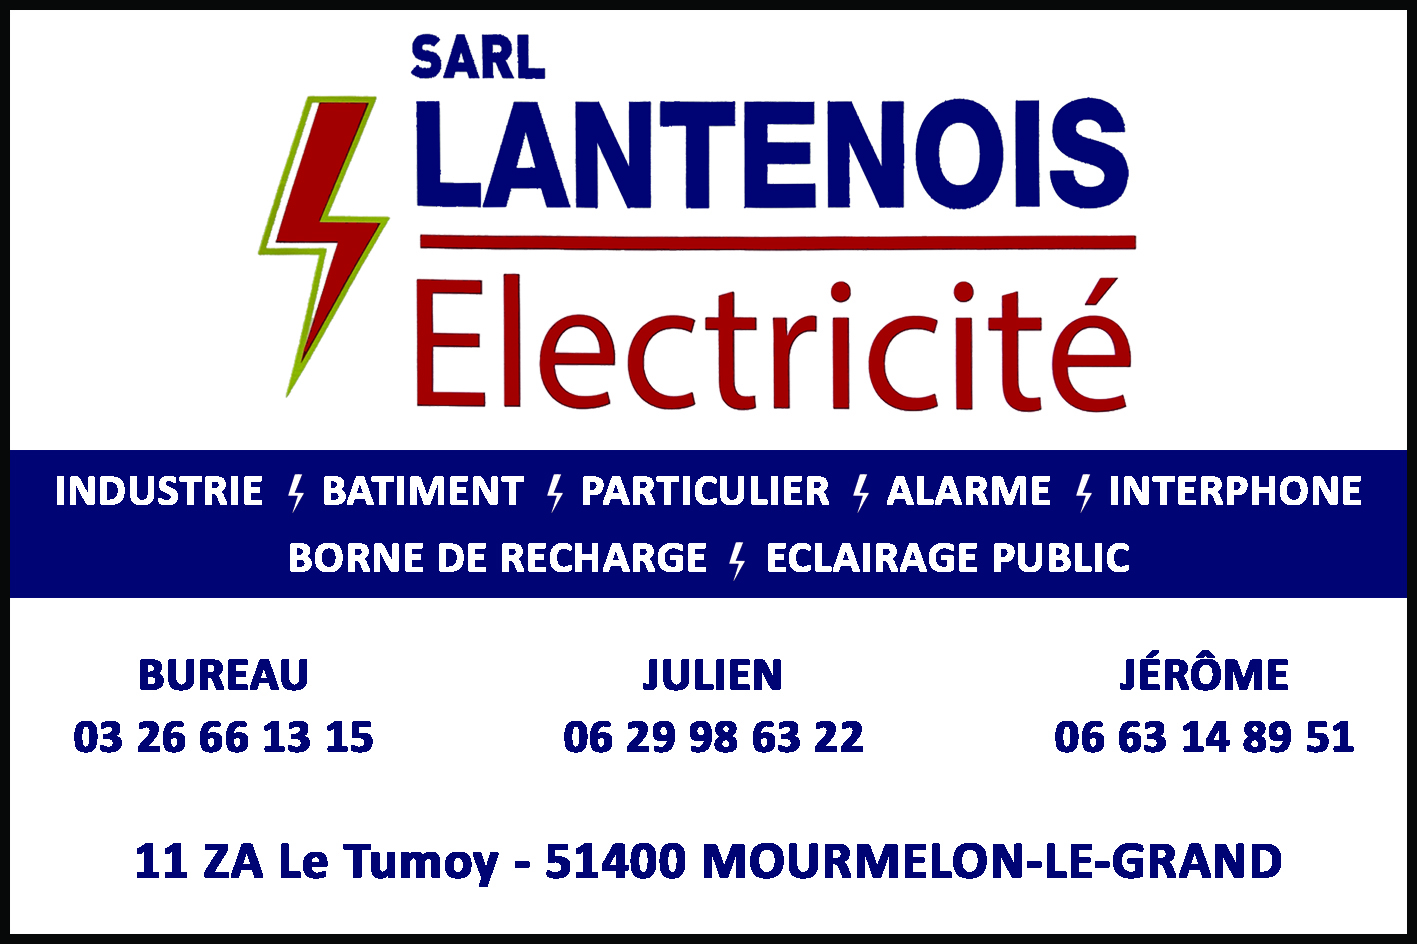 Lantenois Electrique